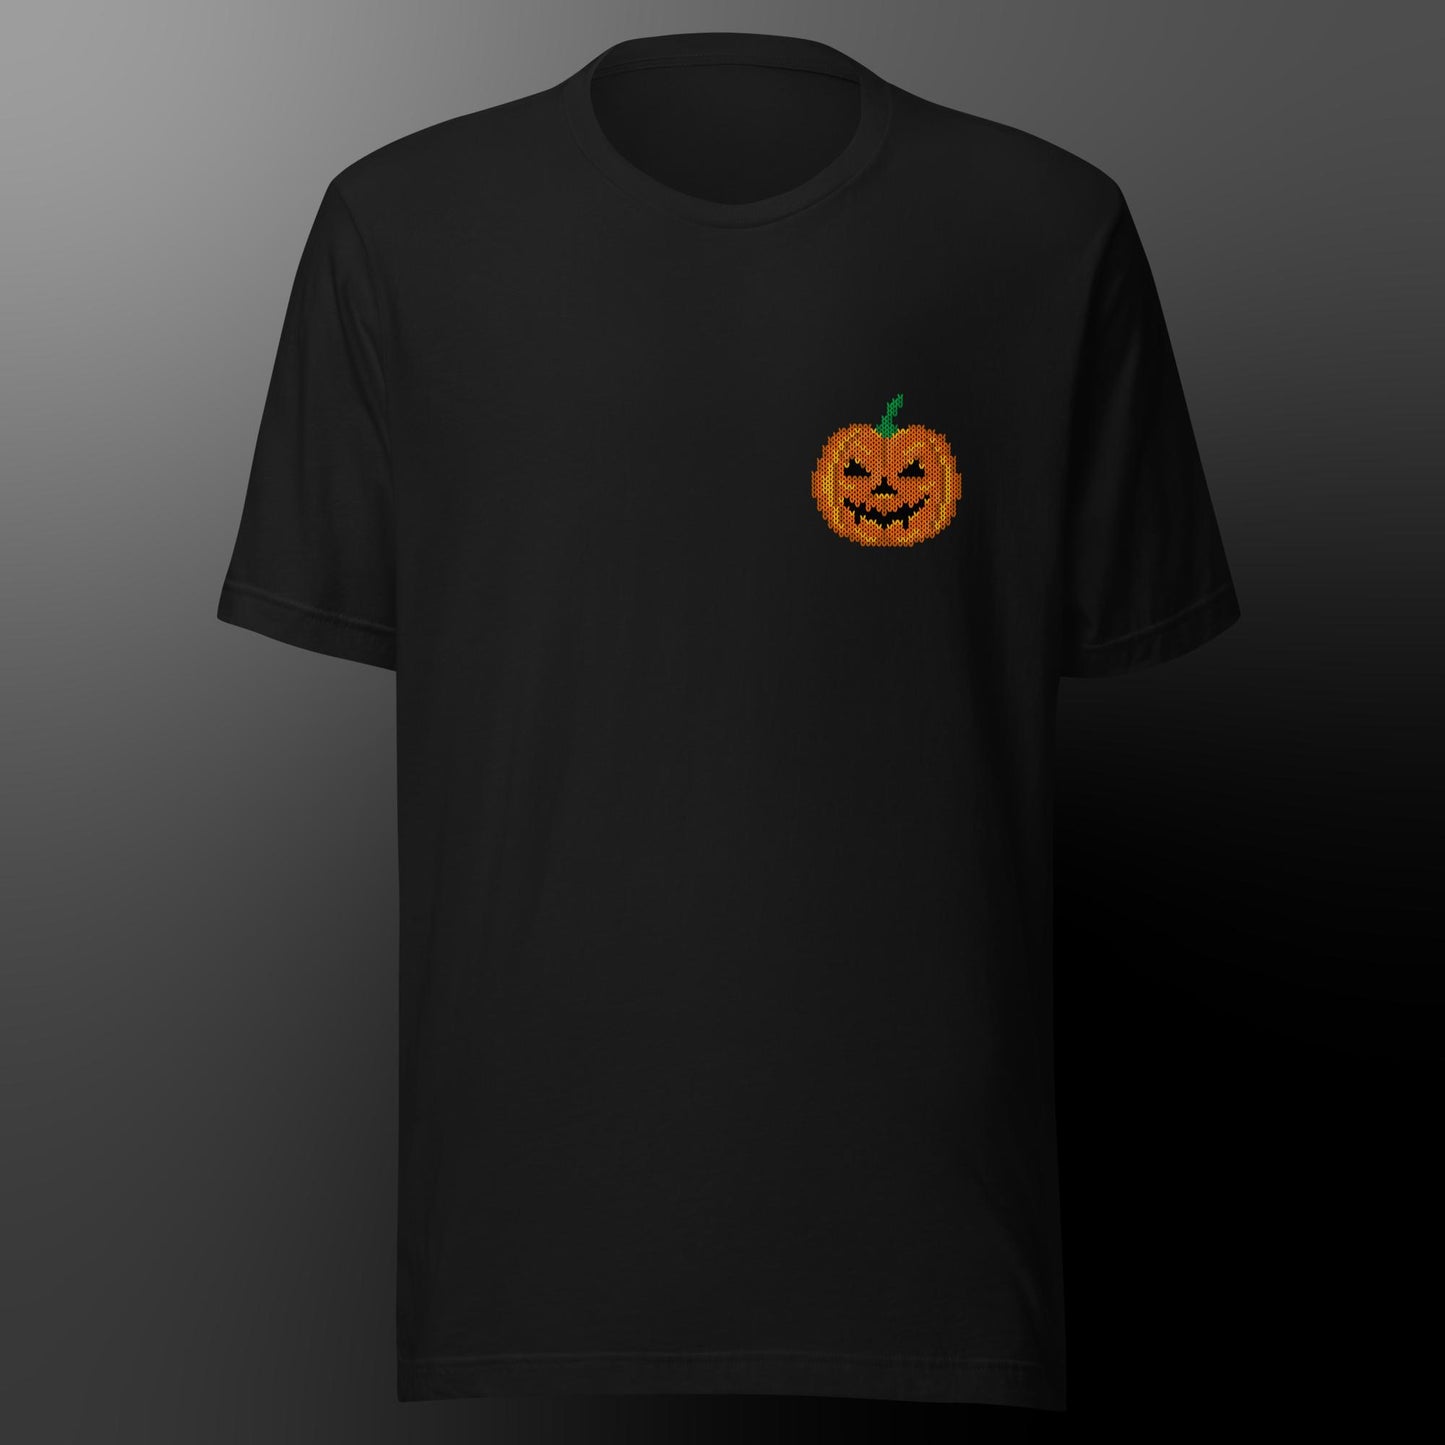 Halloween shirt with pumpkin